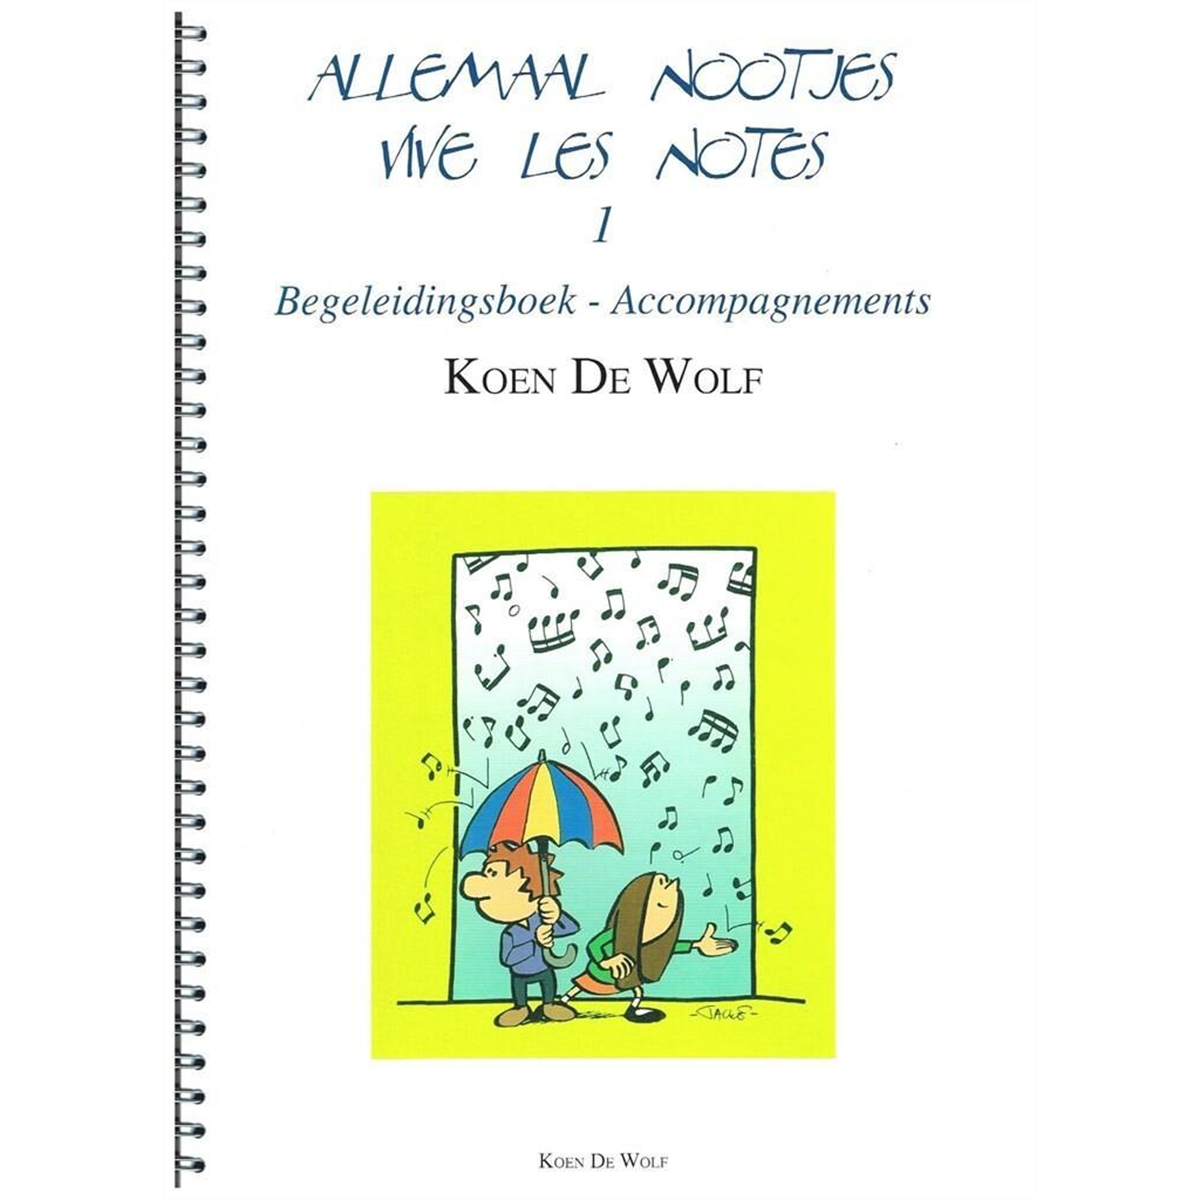 DE WOLF Koen Vive les Notes Vol. 1 Accompagnements